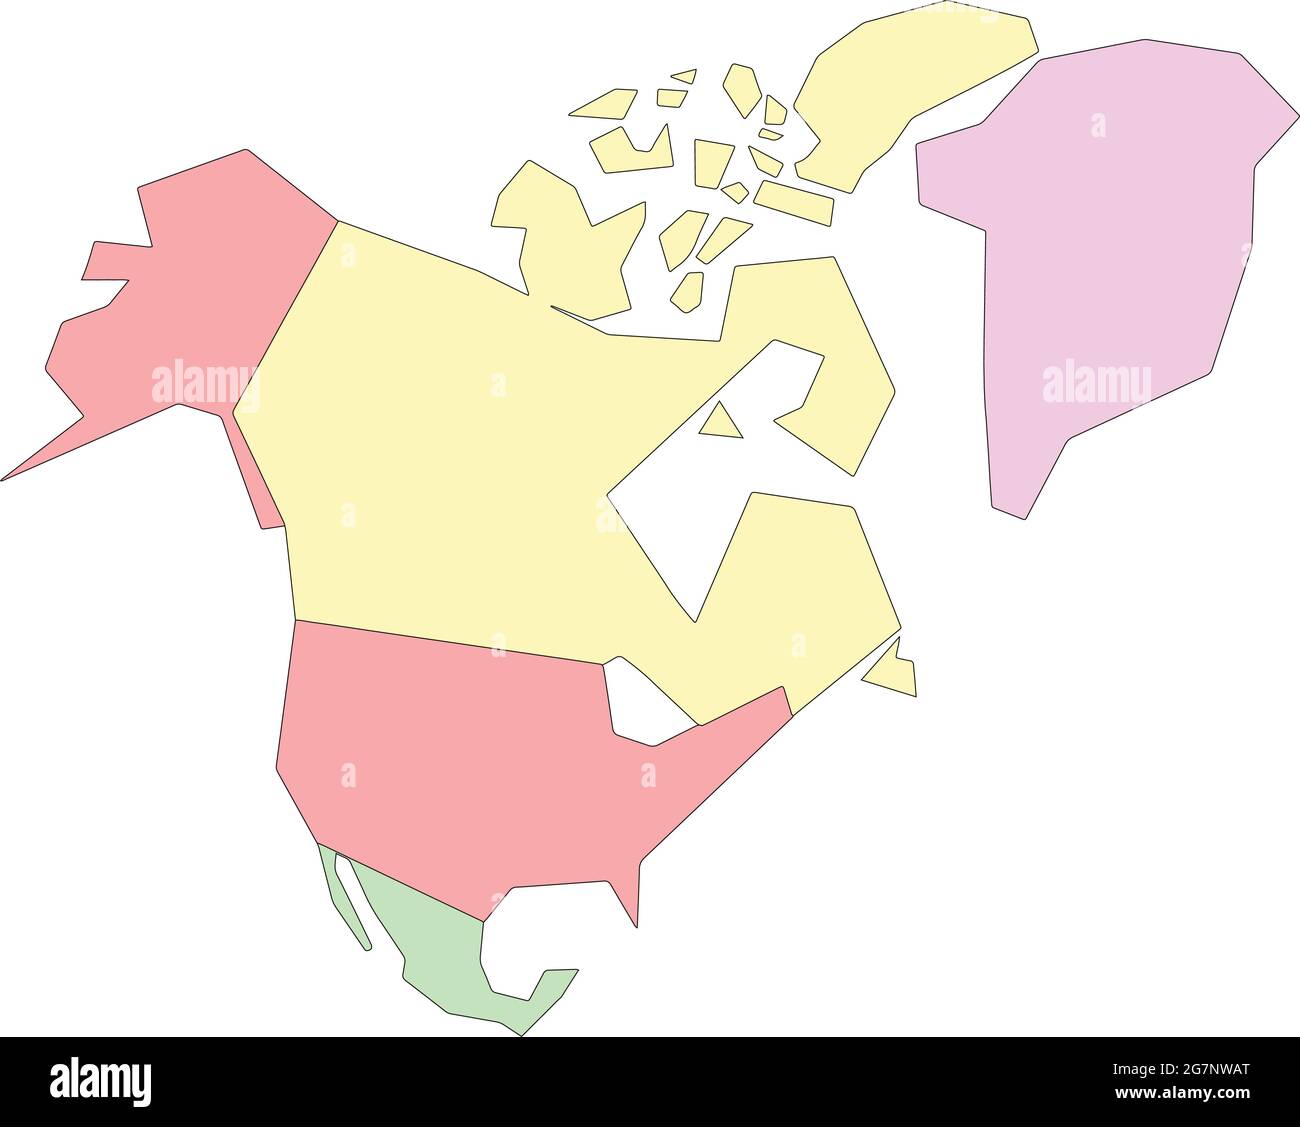 Vektor-Karte von Nordamerika zu studieren, bunt mit Umriss Stock Vektor